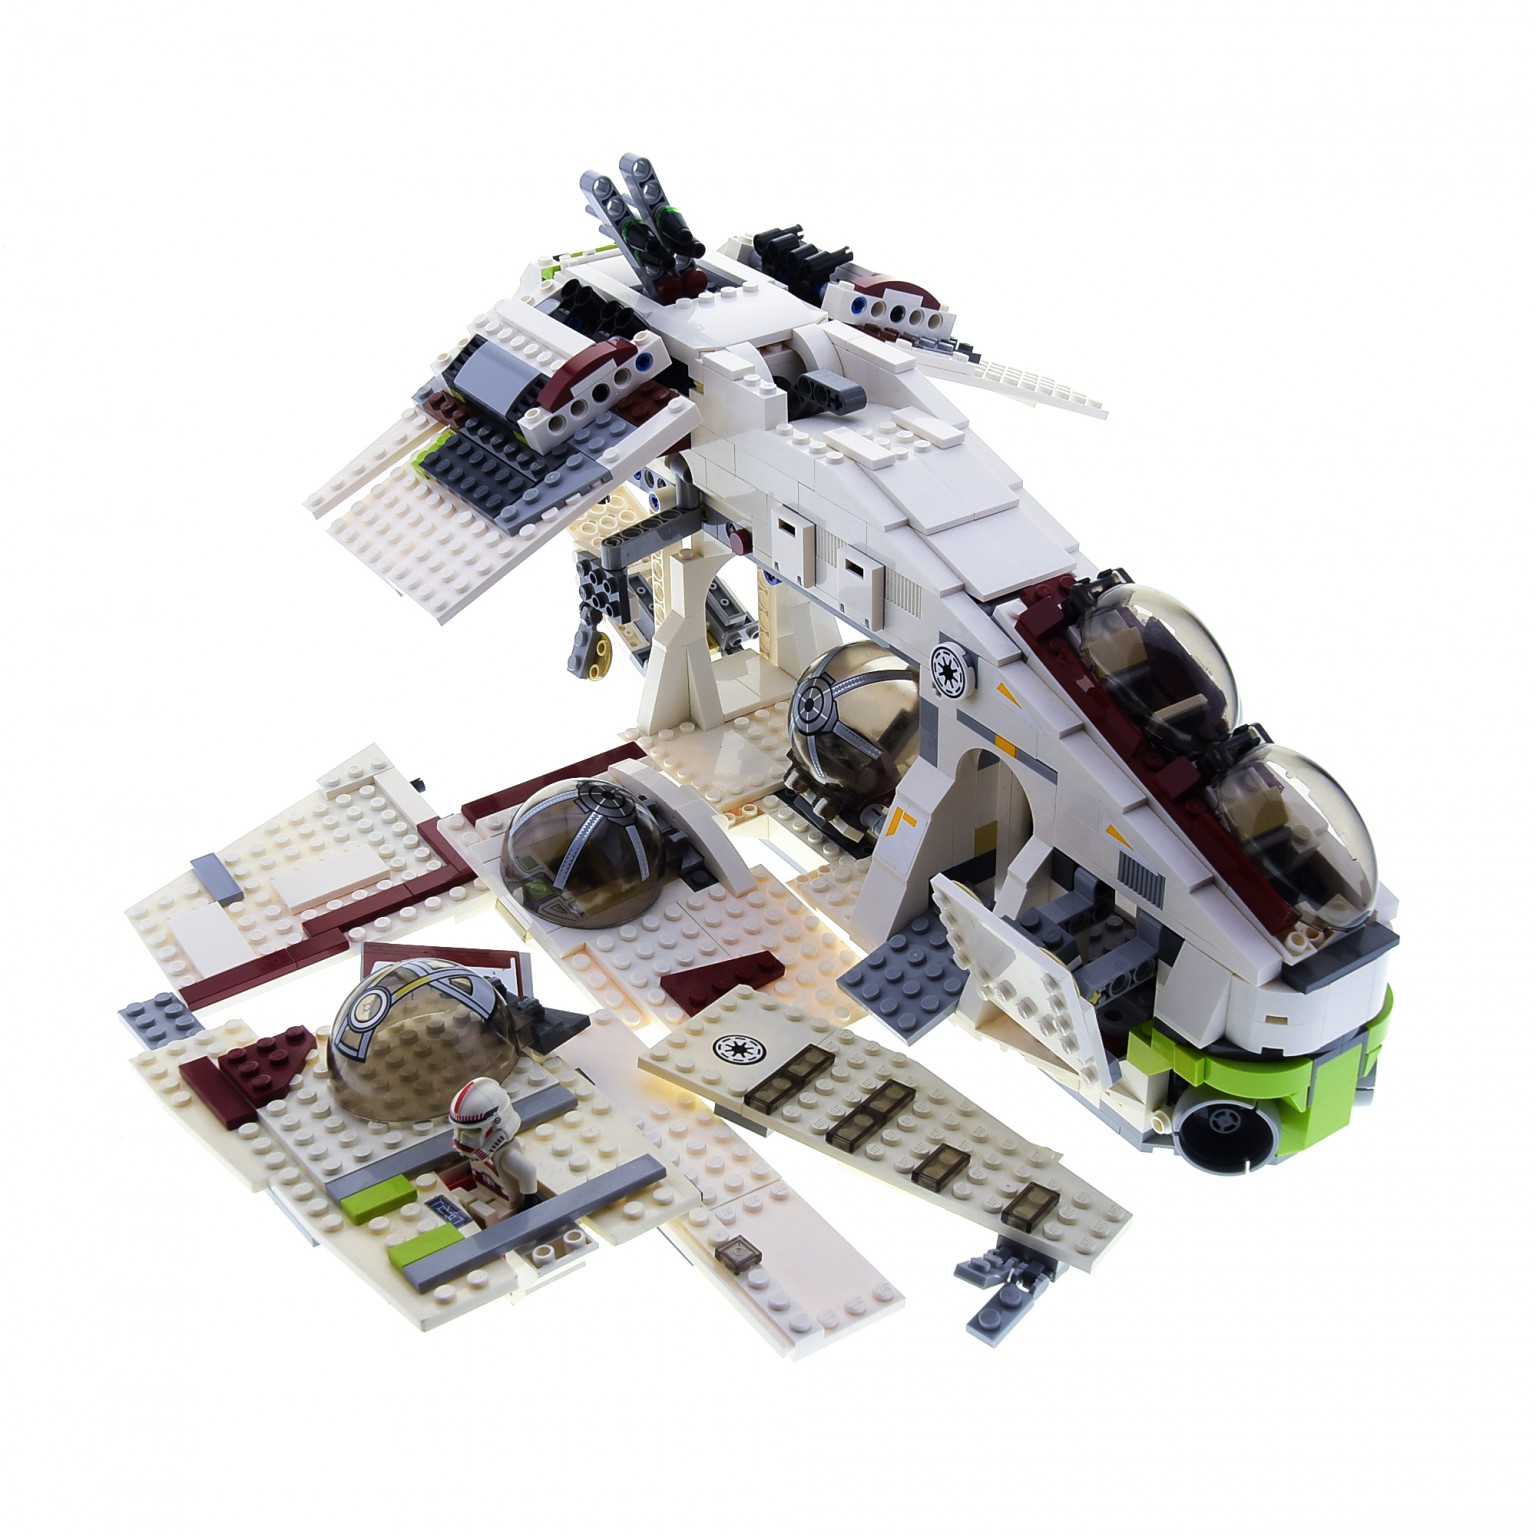 1 x Lego System Teile Set für Modell Star Wars Episode 2 75021 Republic